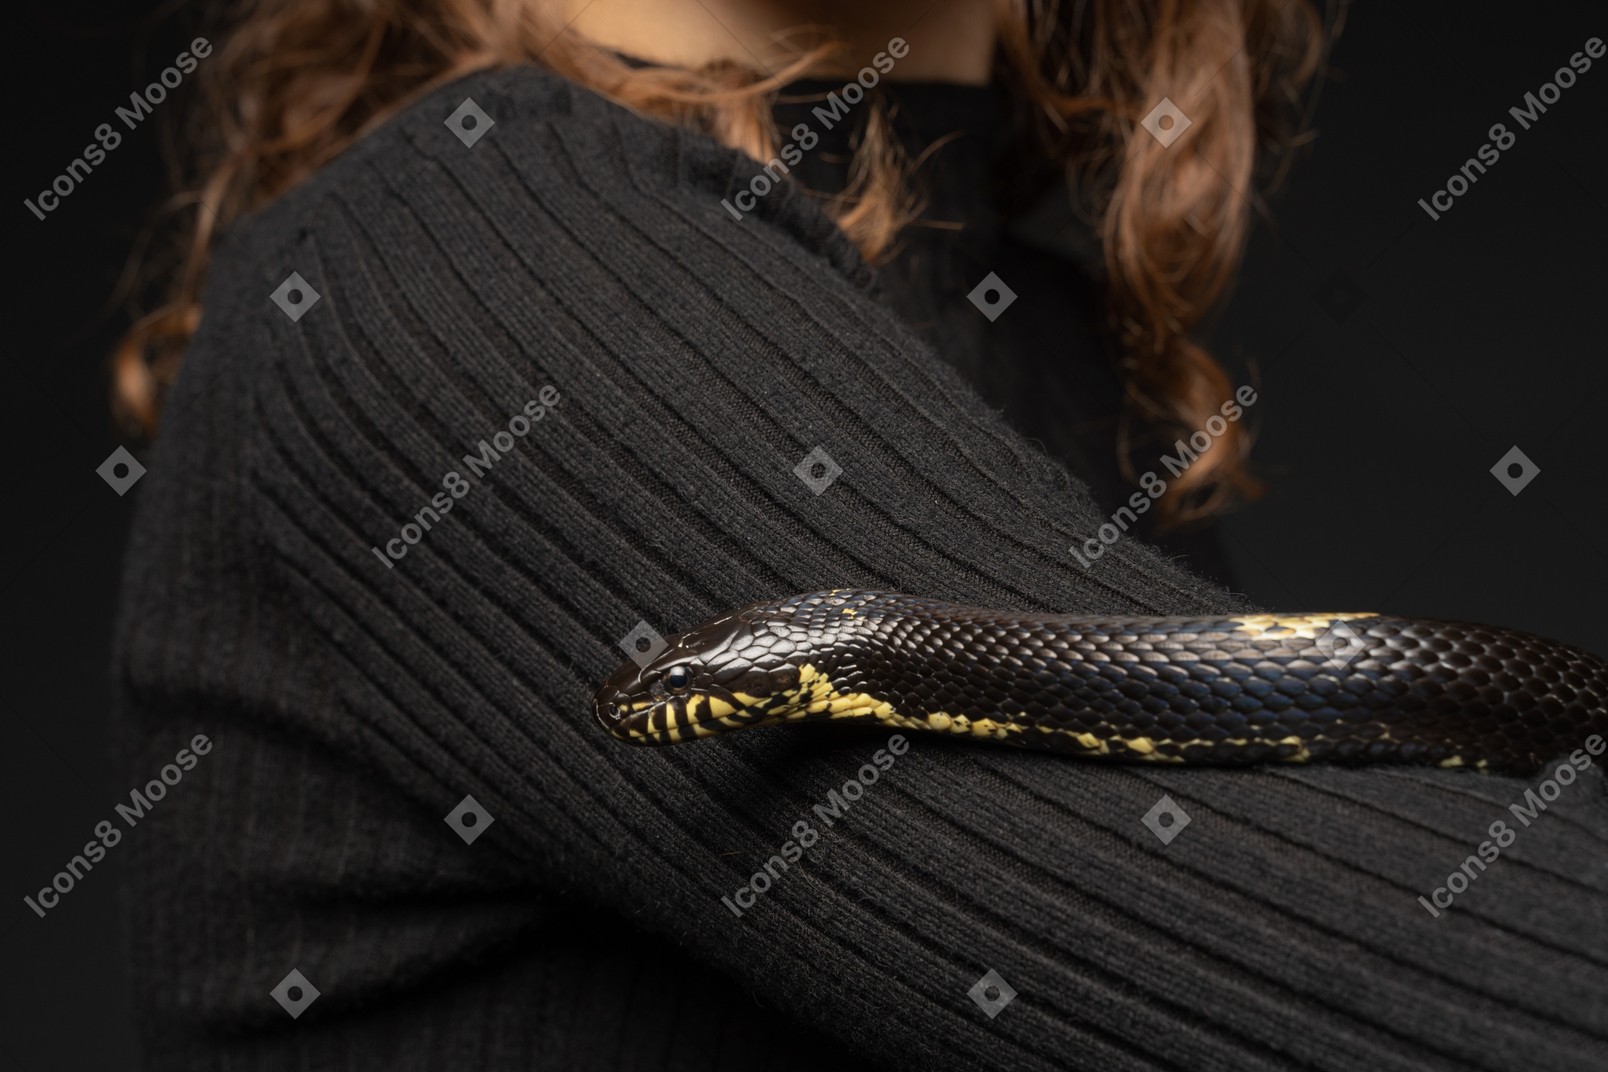 Serpent rayé noir courbant autour du cou de la jeune femme